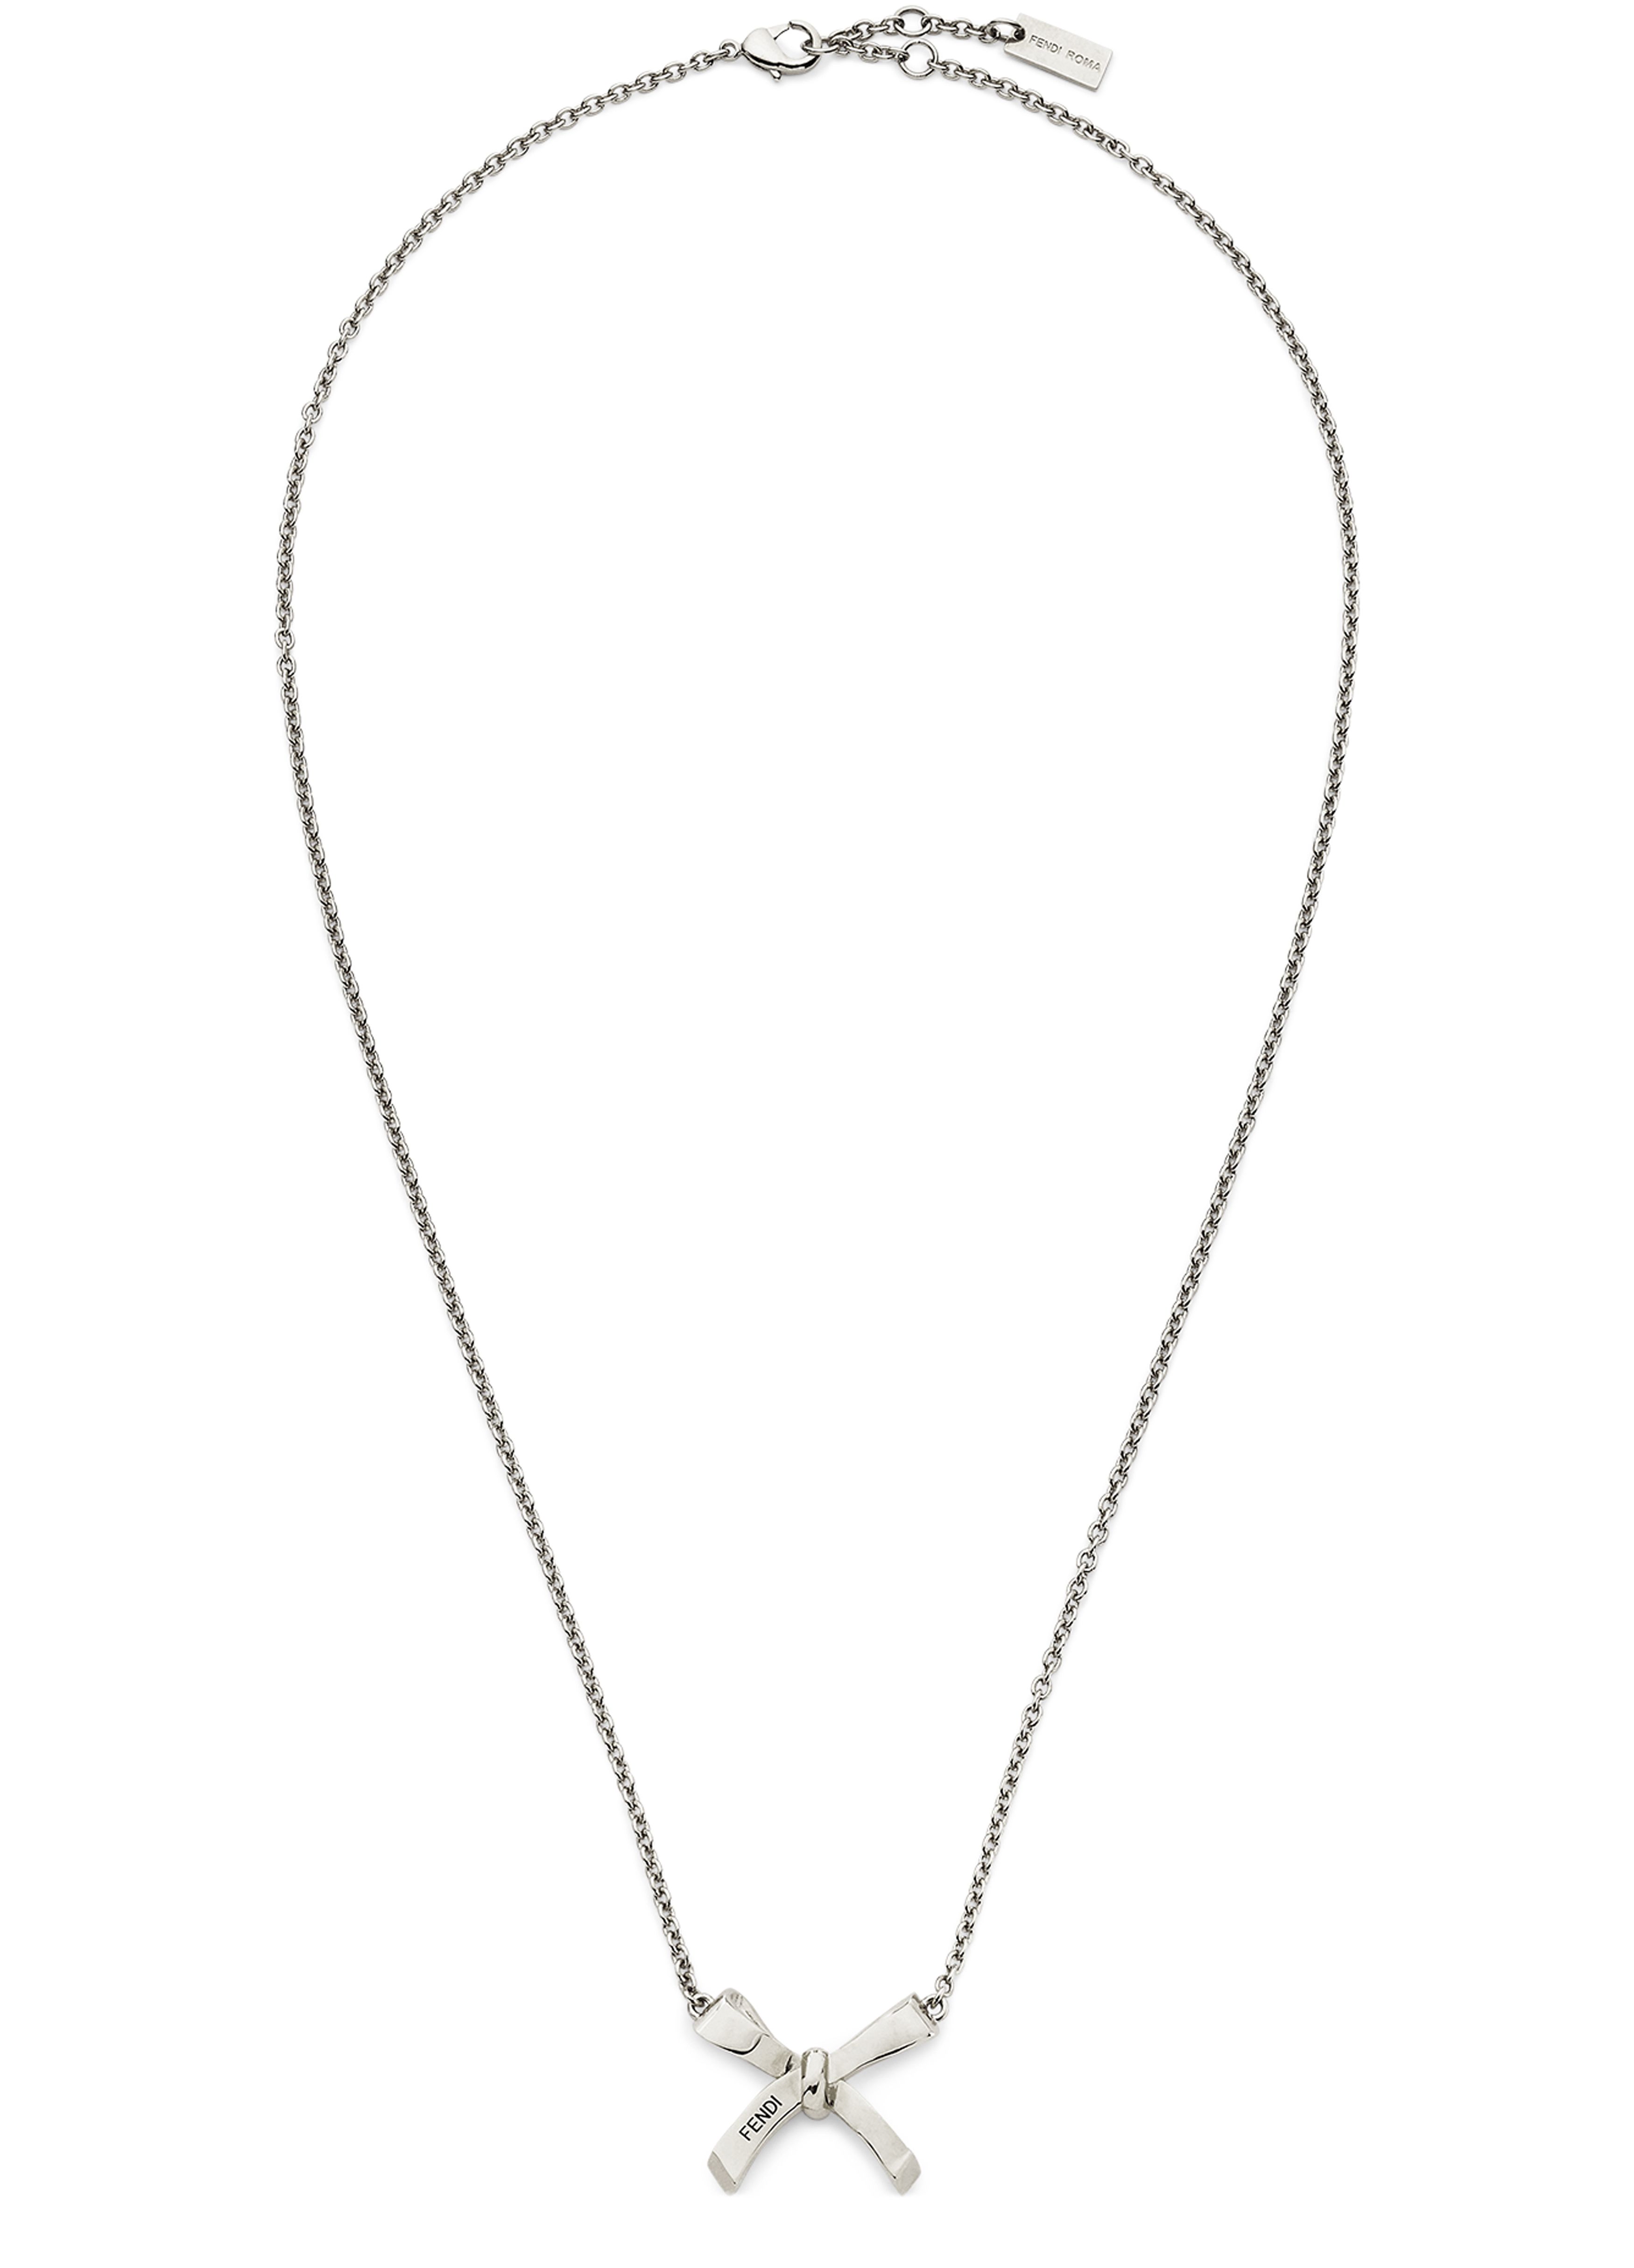 FENDI Fendi Bow Necklace